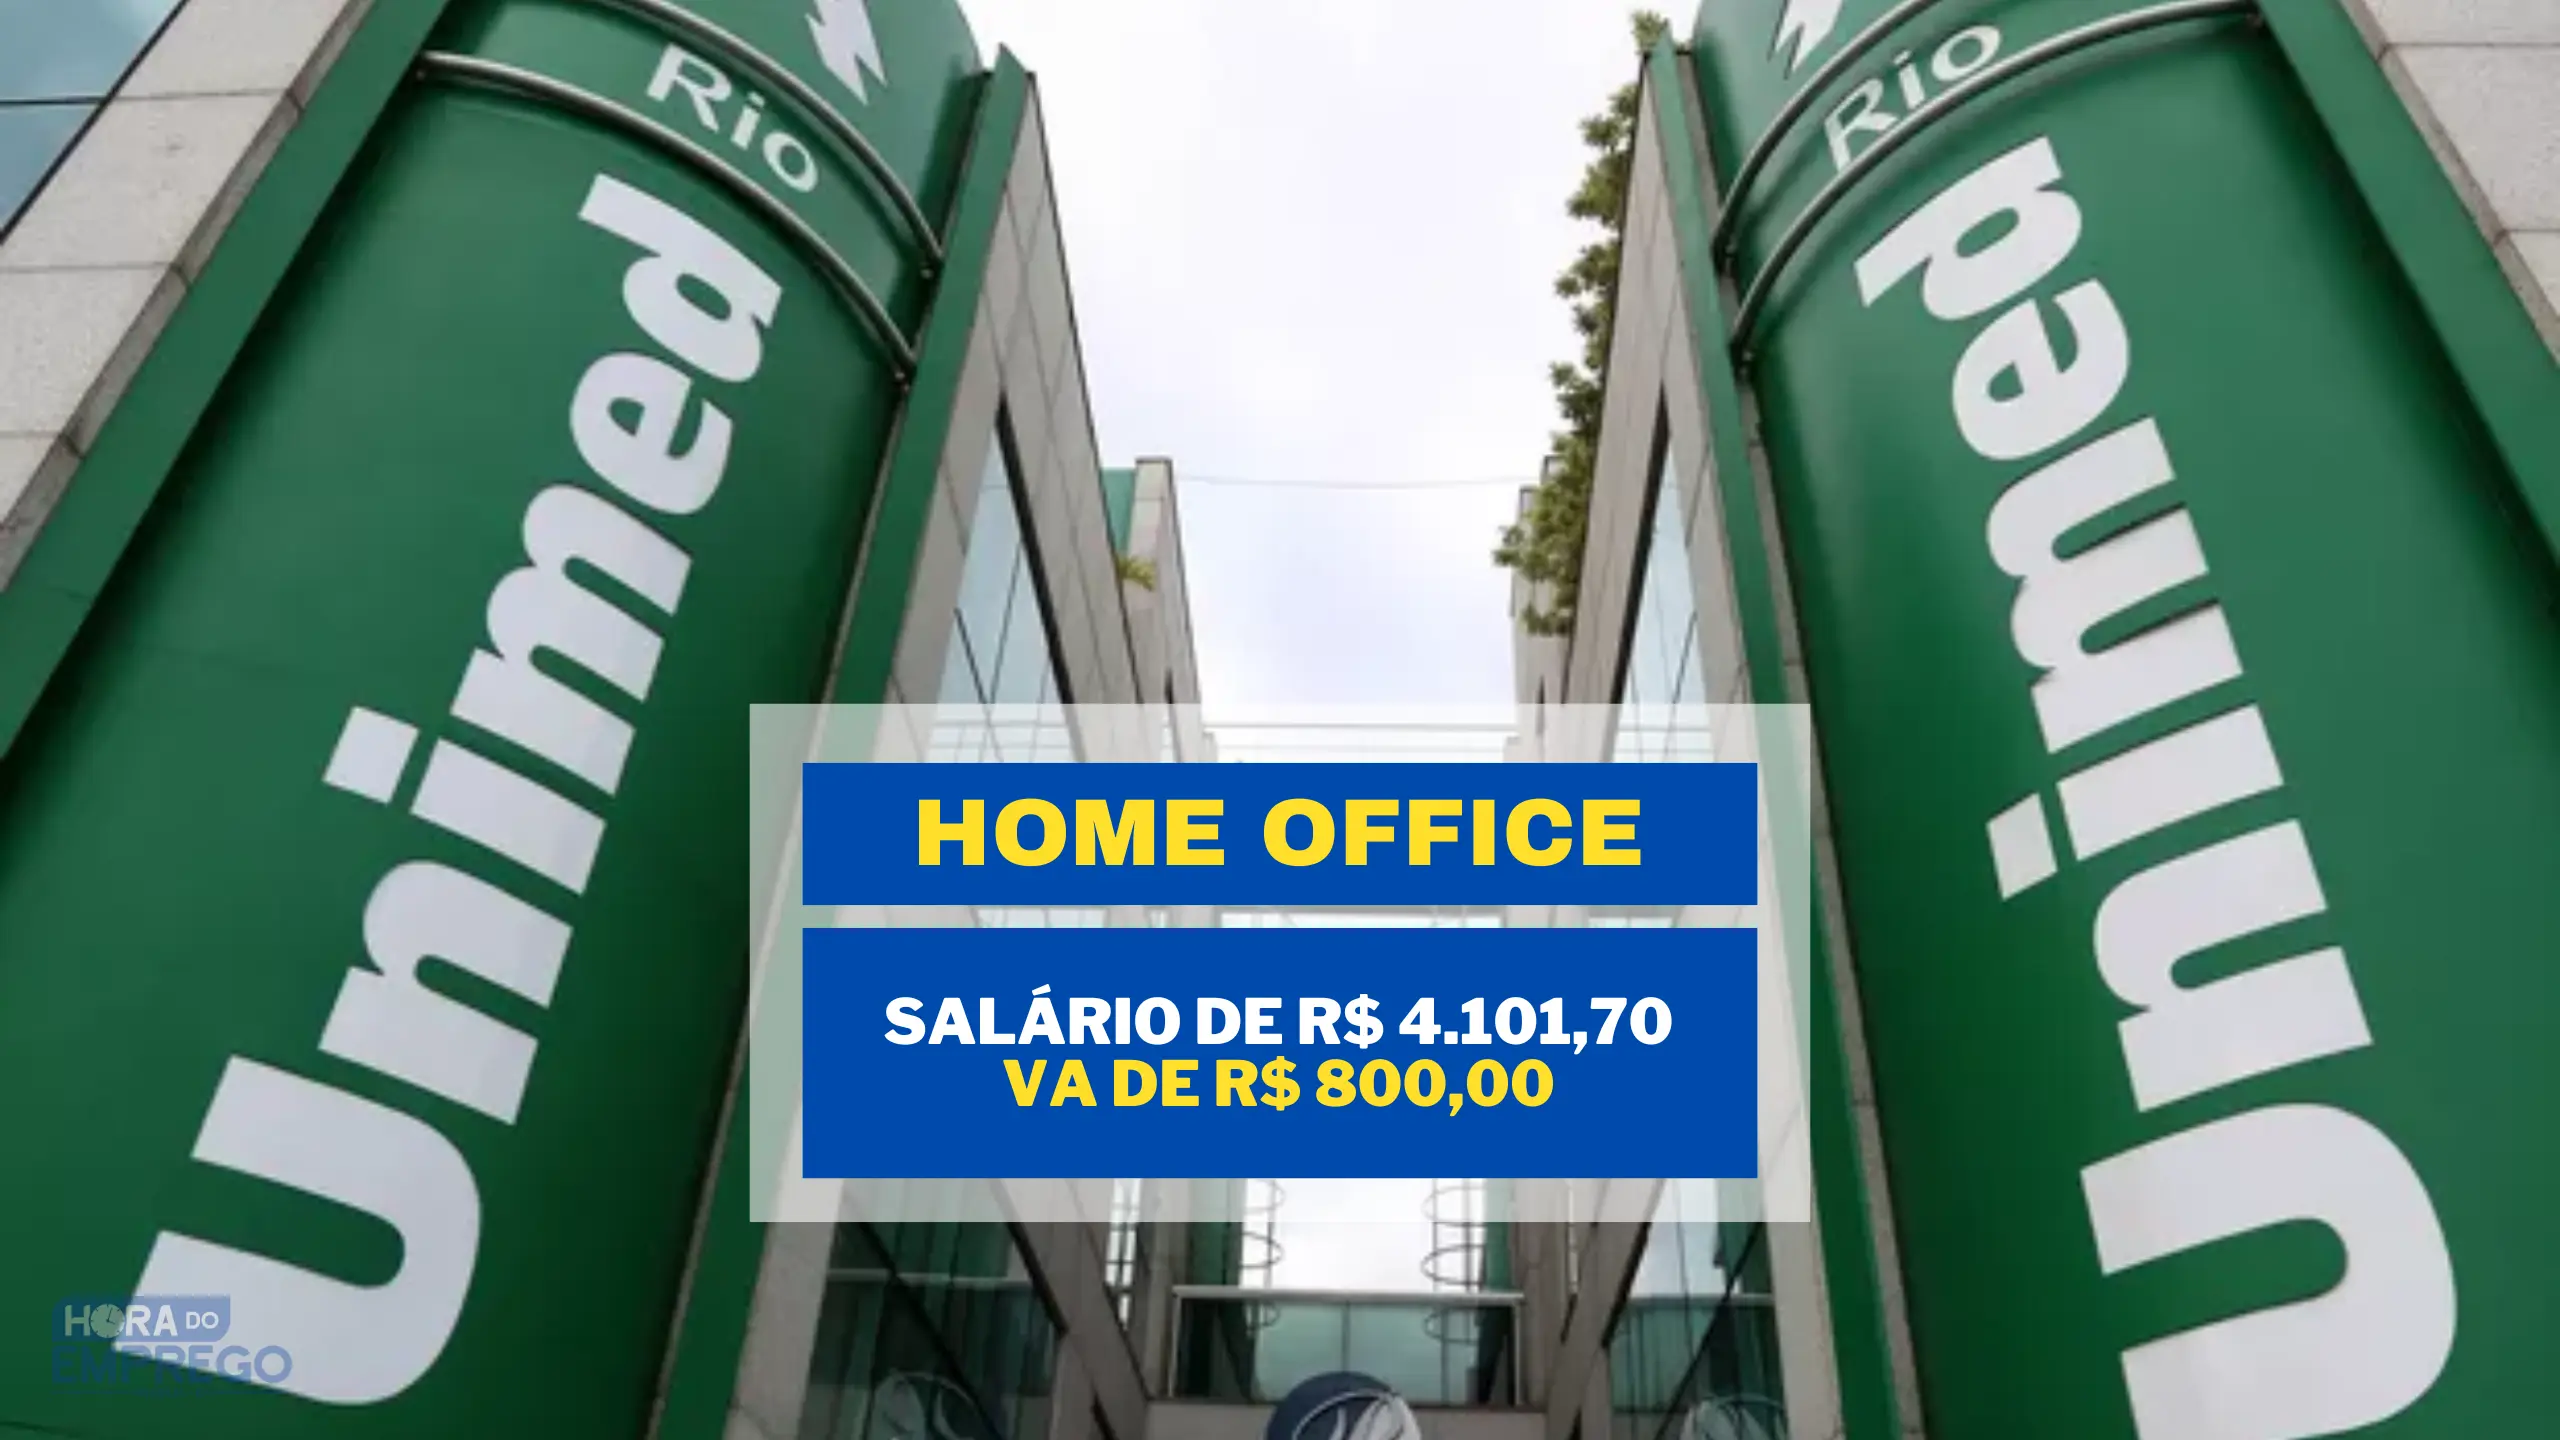 UNIMED abriu vaga HOME OFFICE com salário de R$ 4.101,70 e VA de R$ 800,00 para Analista de Comunicação e Marketing